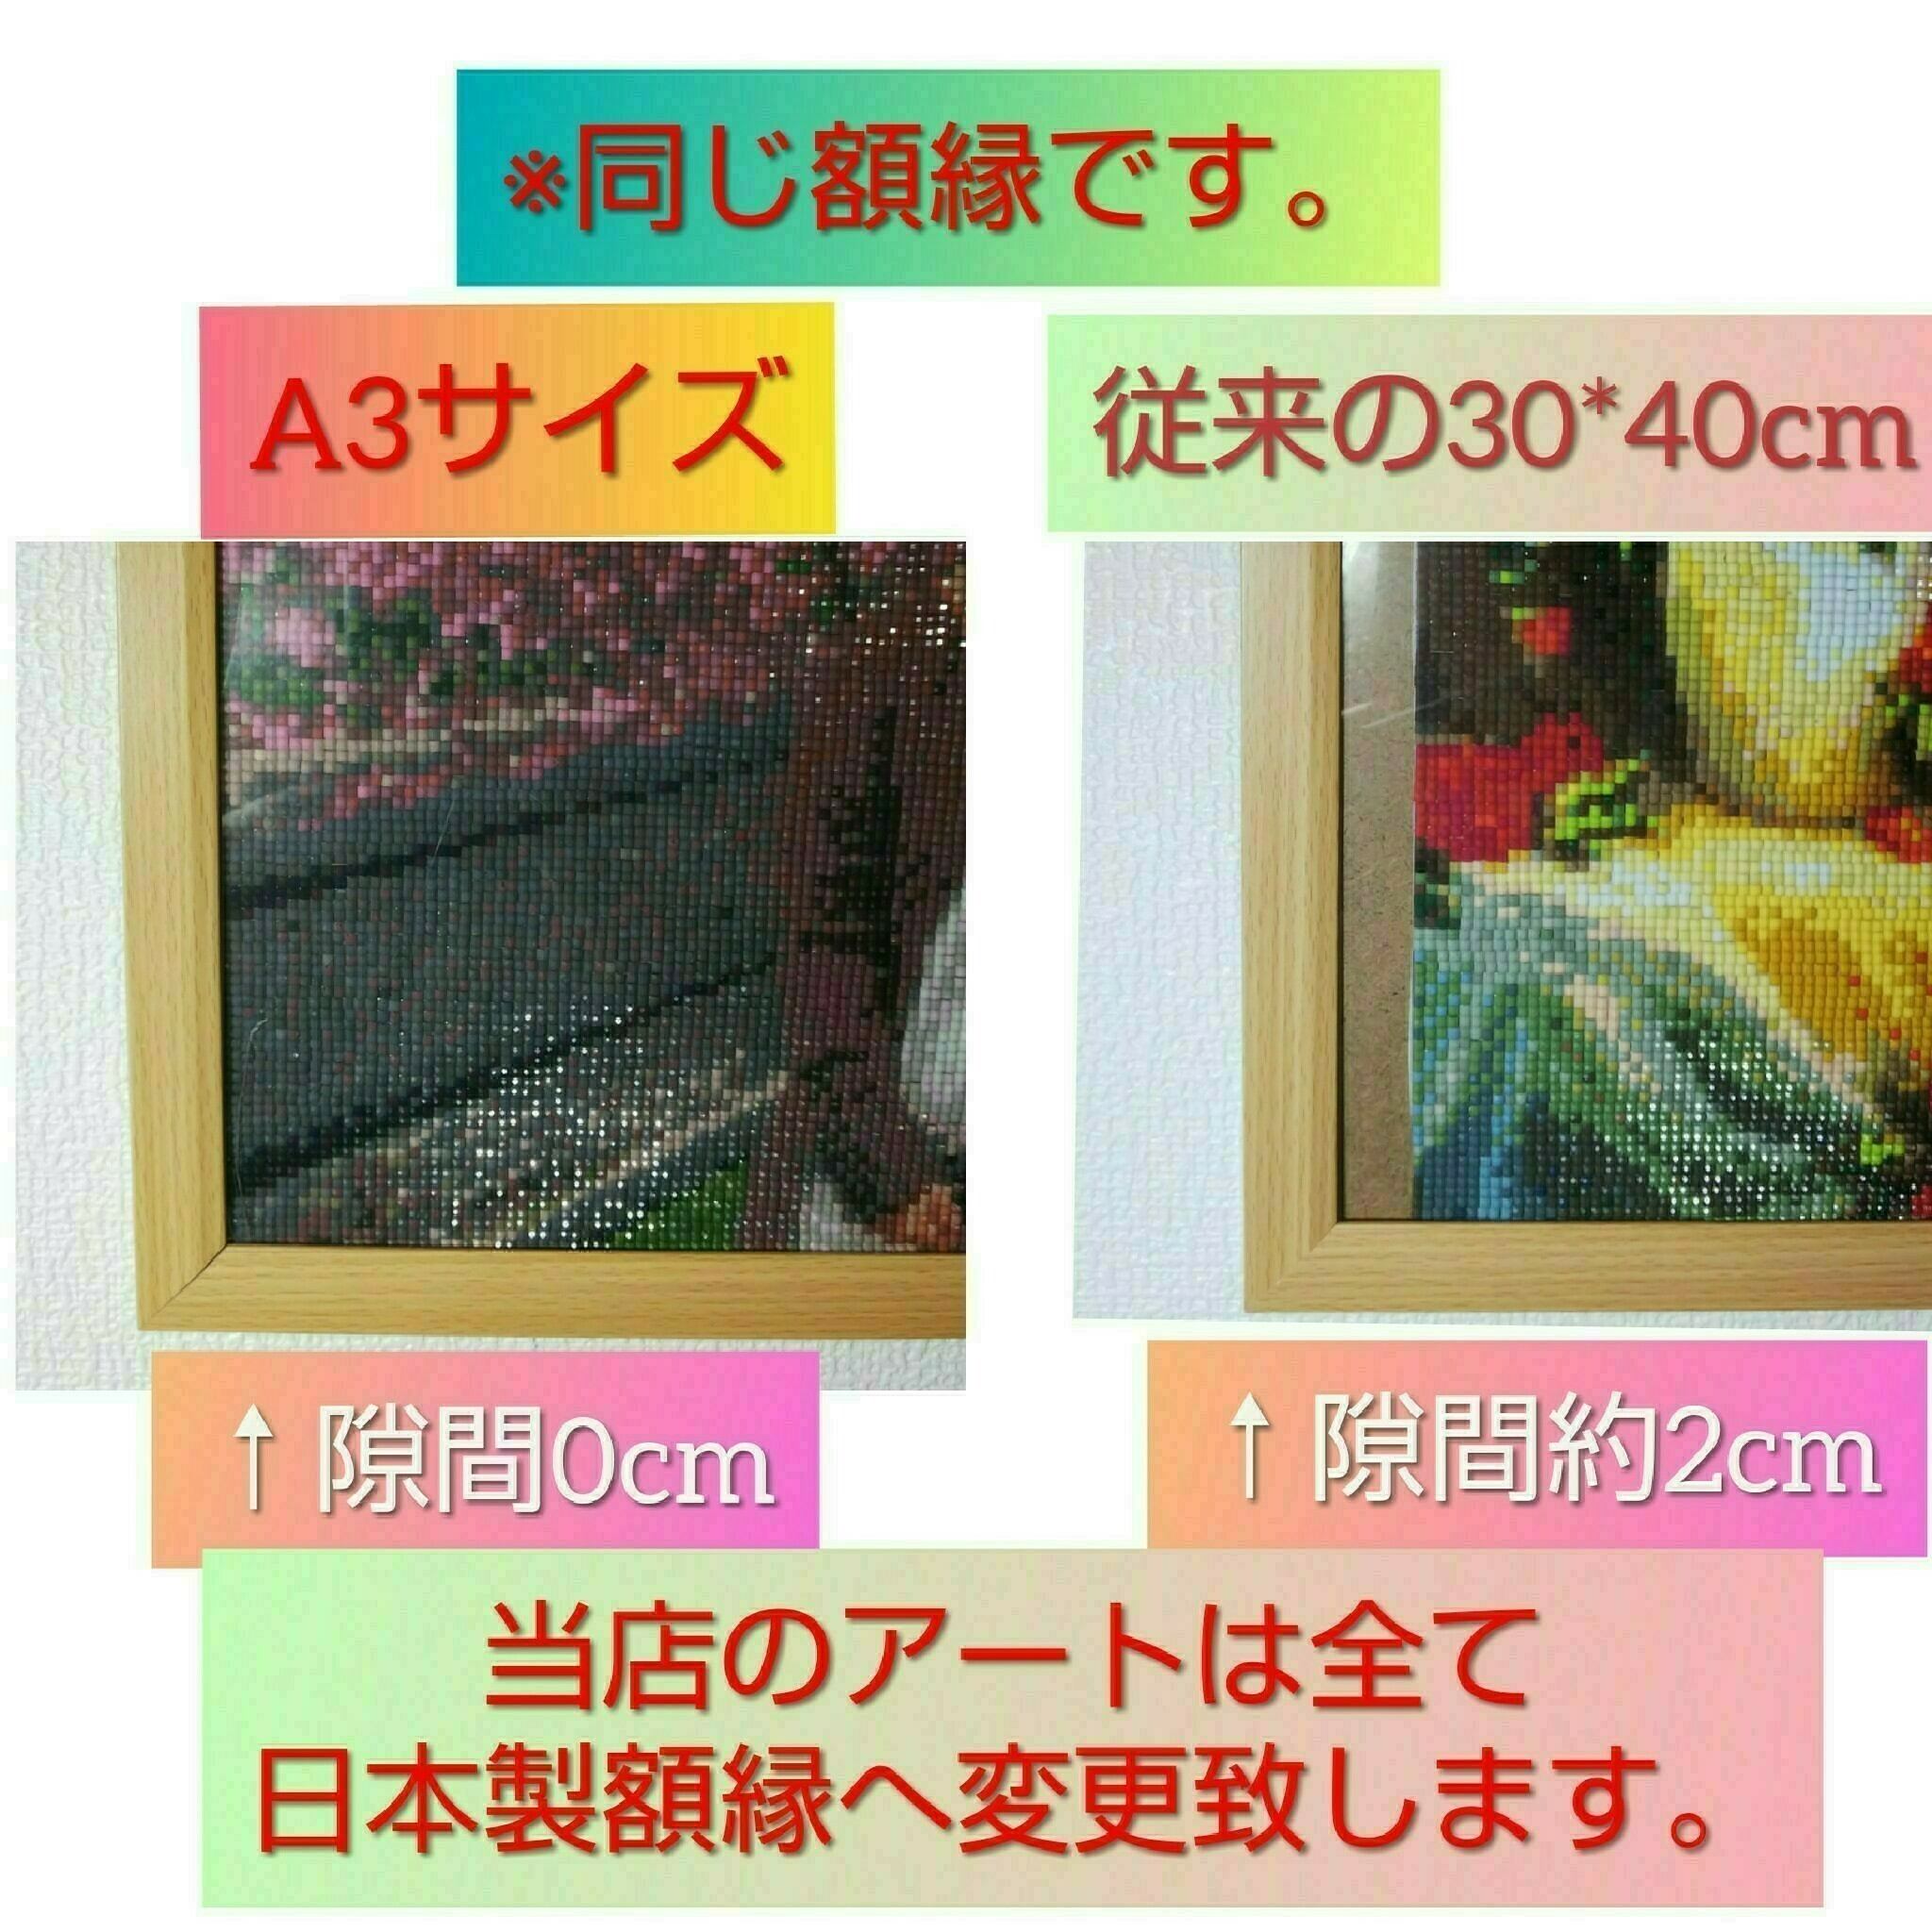 40×40サイズ 四角ビーズ【koo-037】ダイヤモンドアート